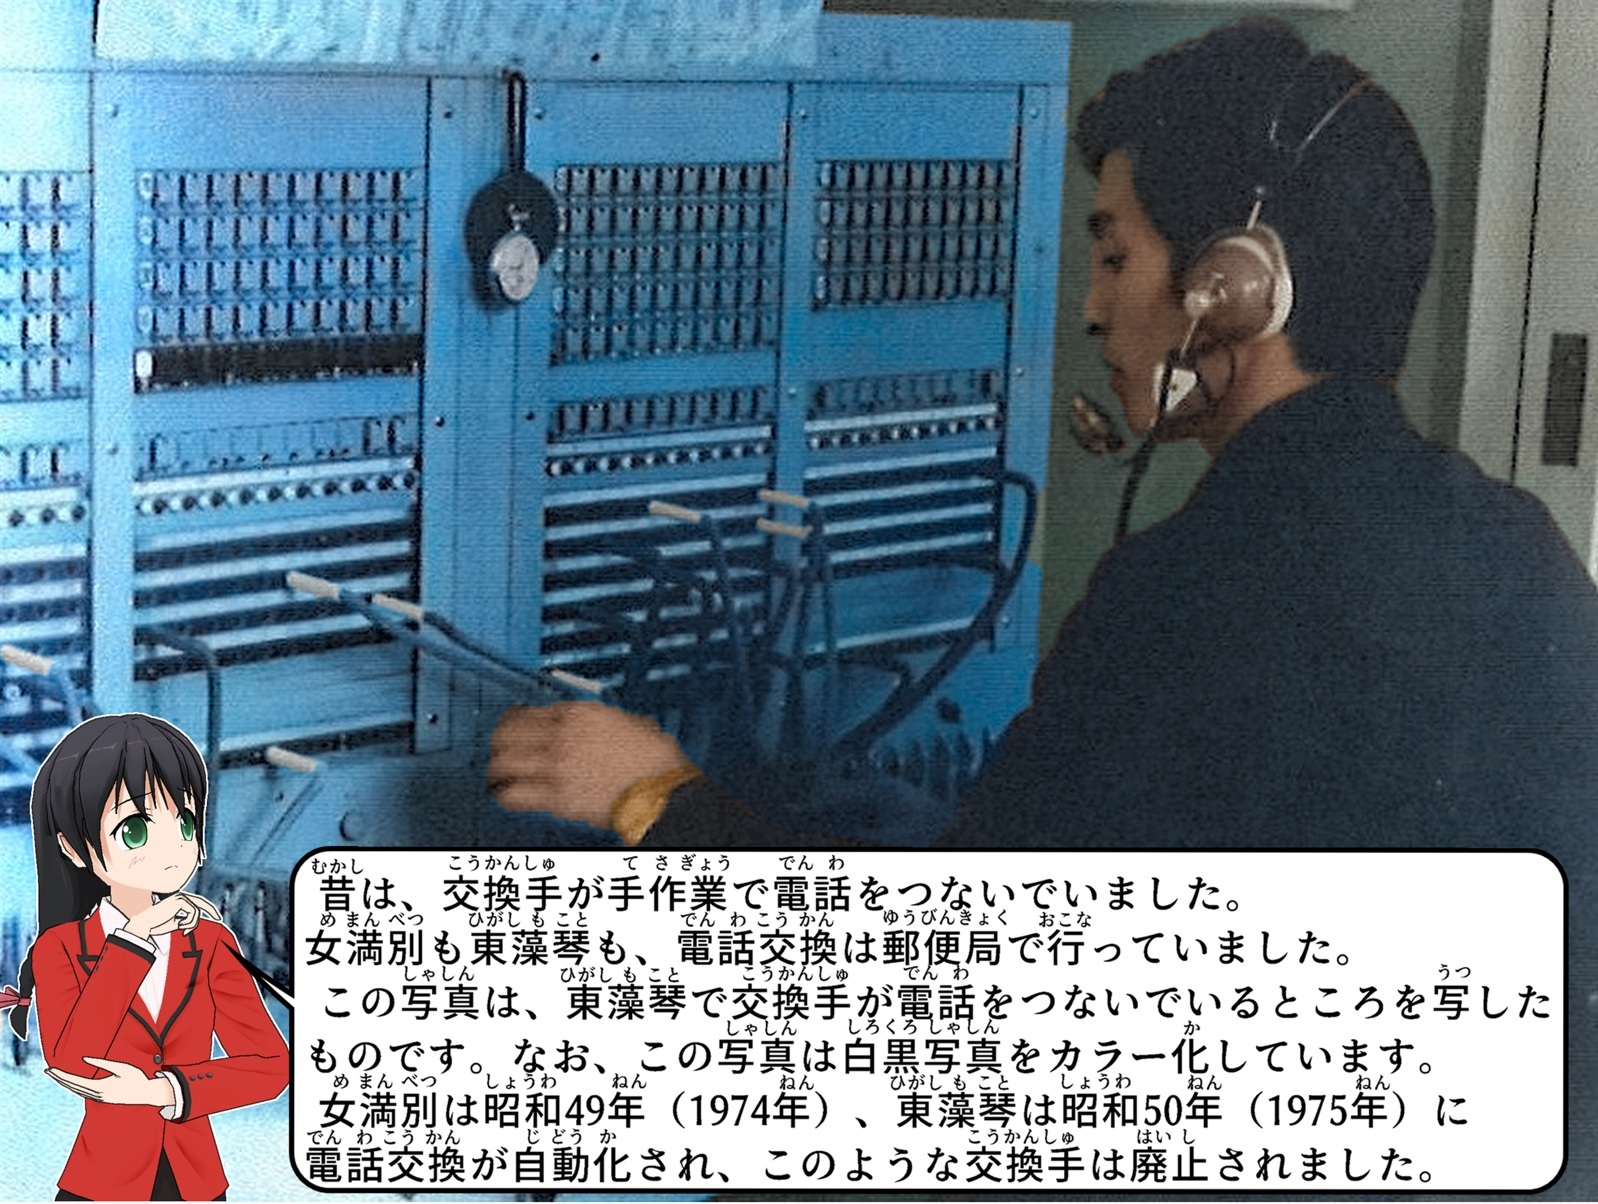 東藻琴で交換手が手作業で電話をつないでいる写真について説明をしているイラスト